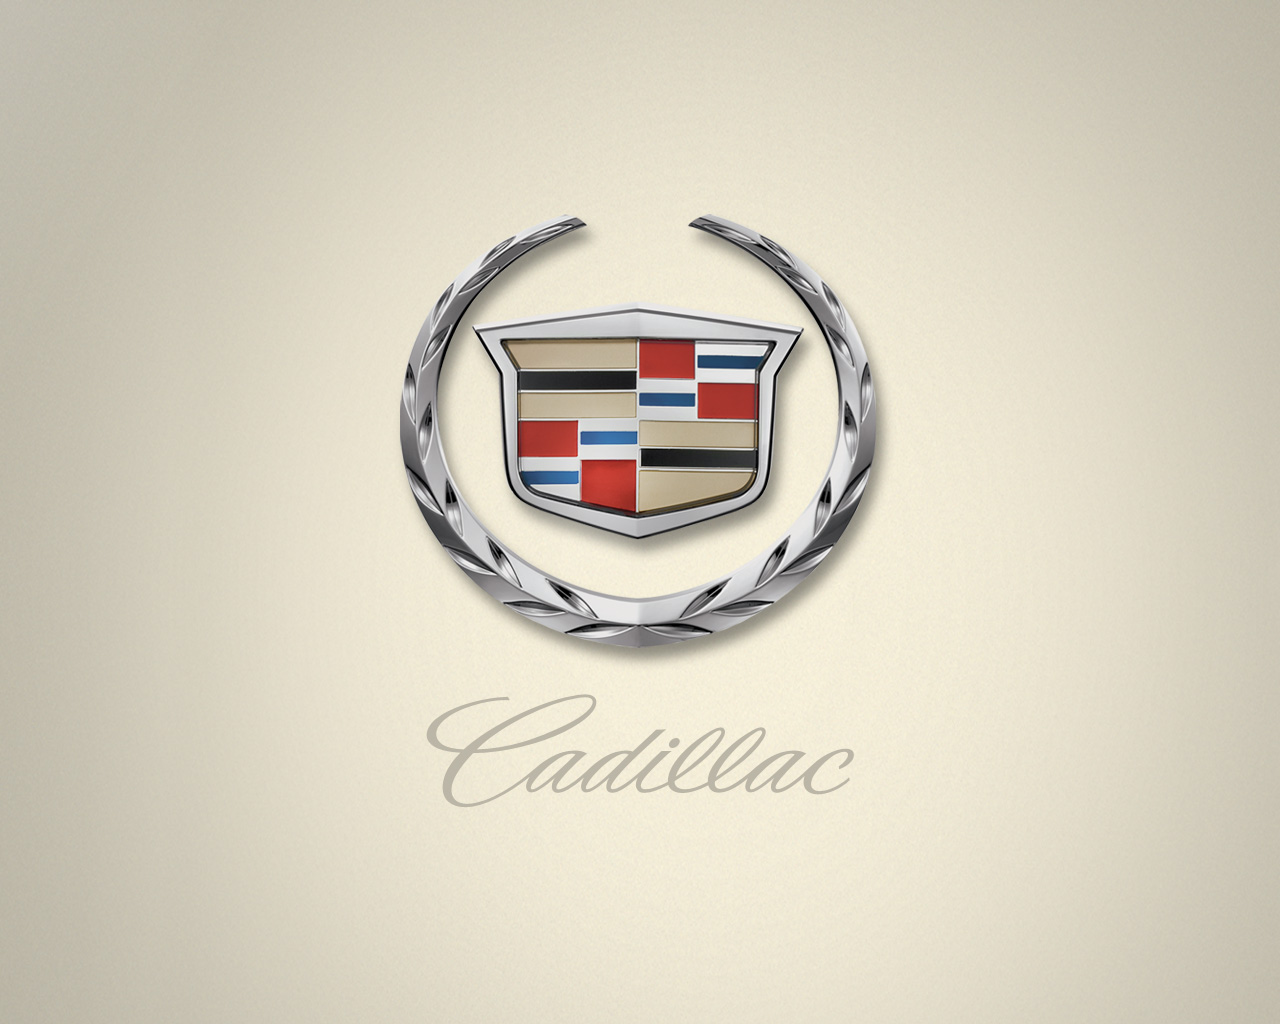 Cadillac Emblem Wallpapers